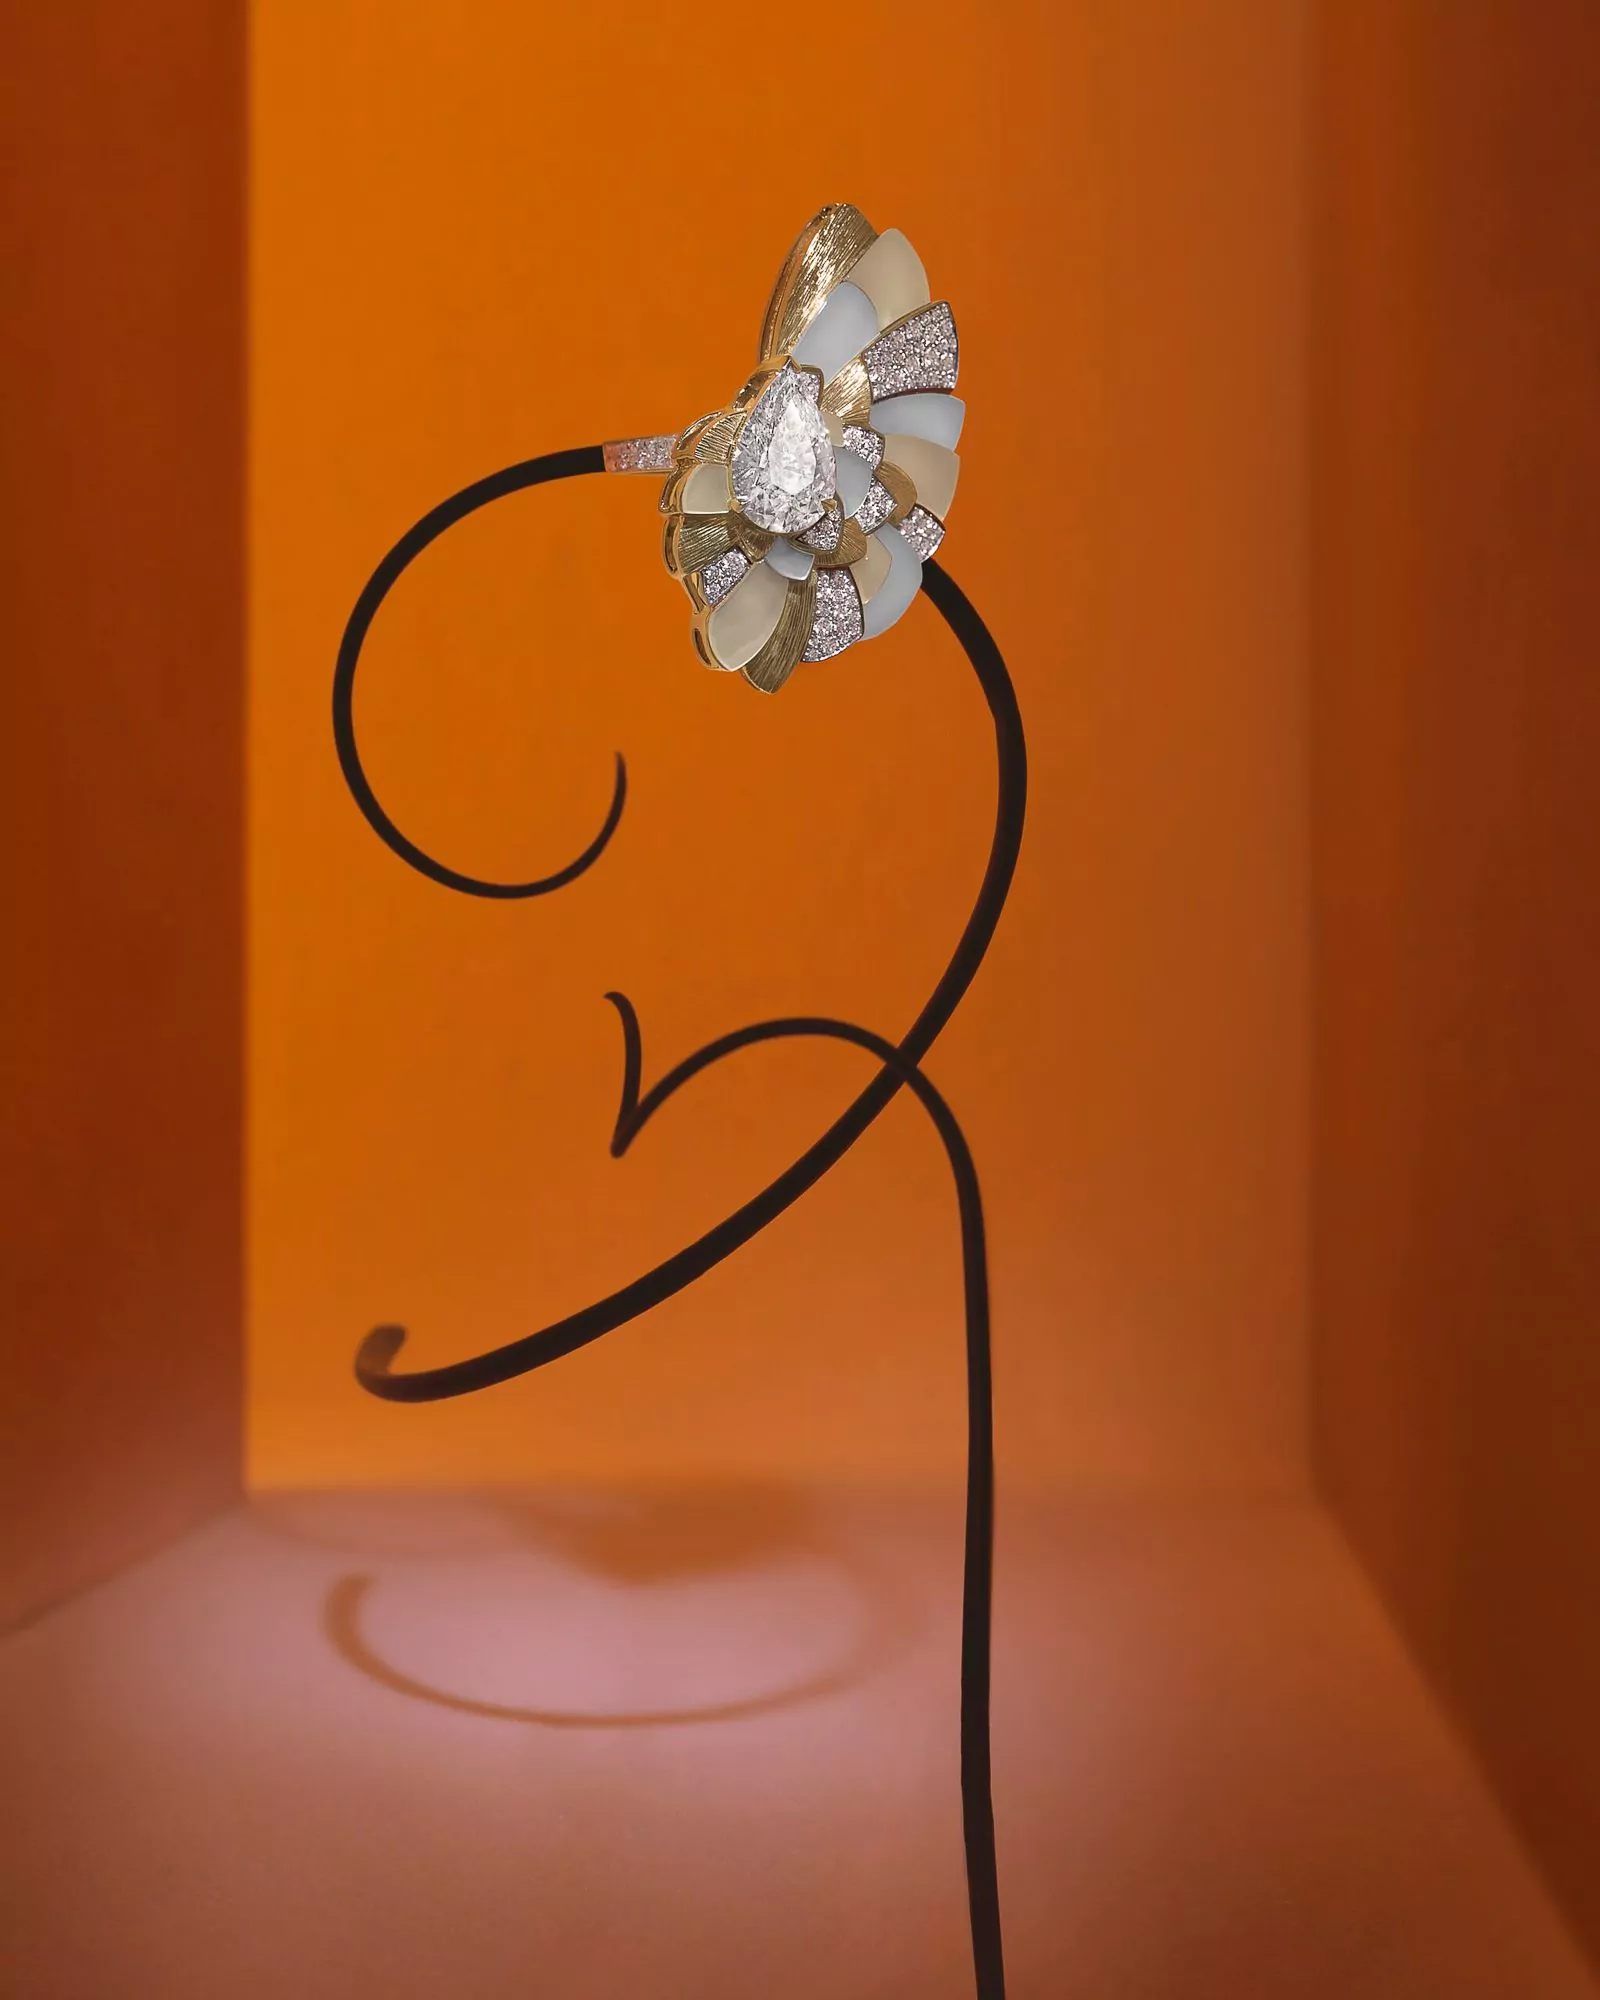 Дом Piaget представляет коллекцию Высокого ювелирного искусства «Metaphoria», фото 3